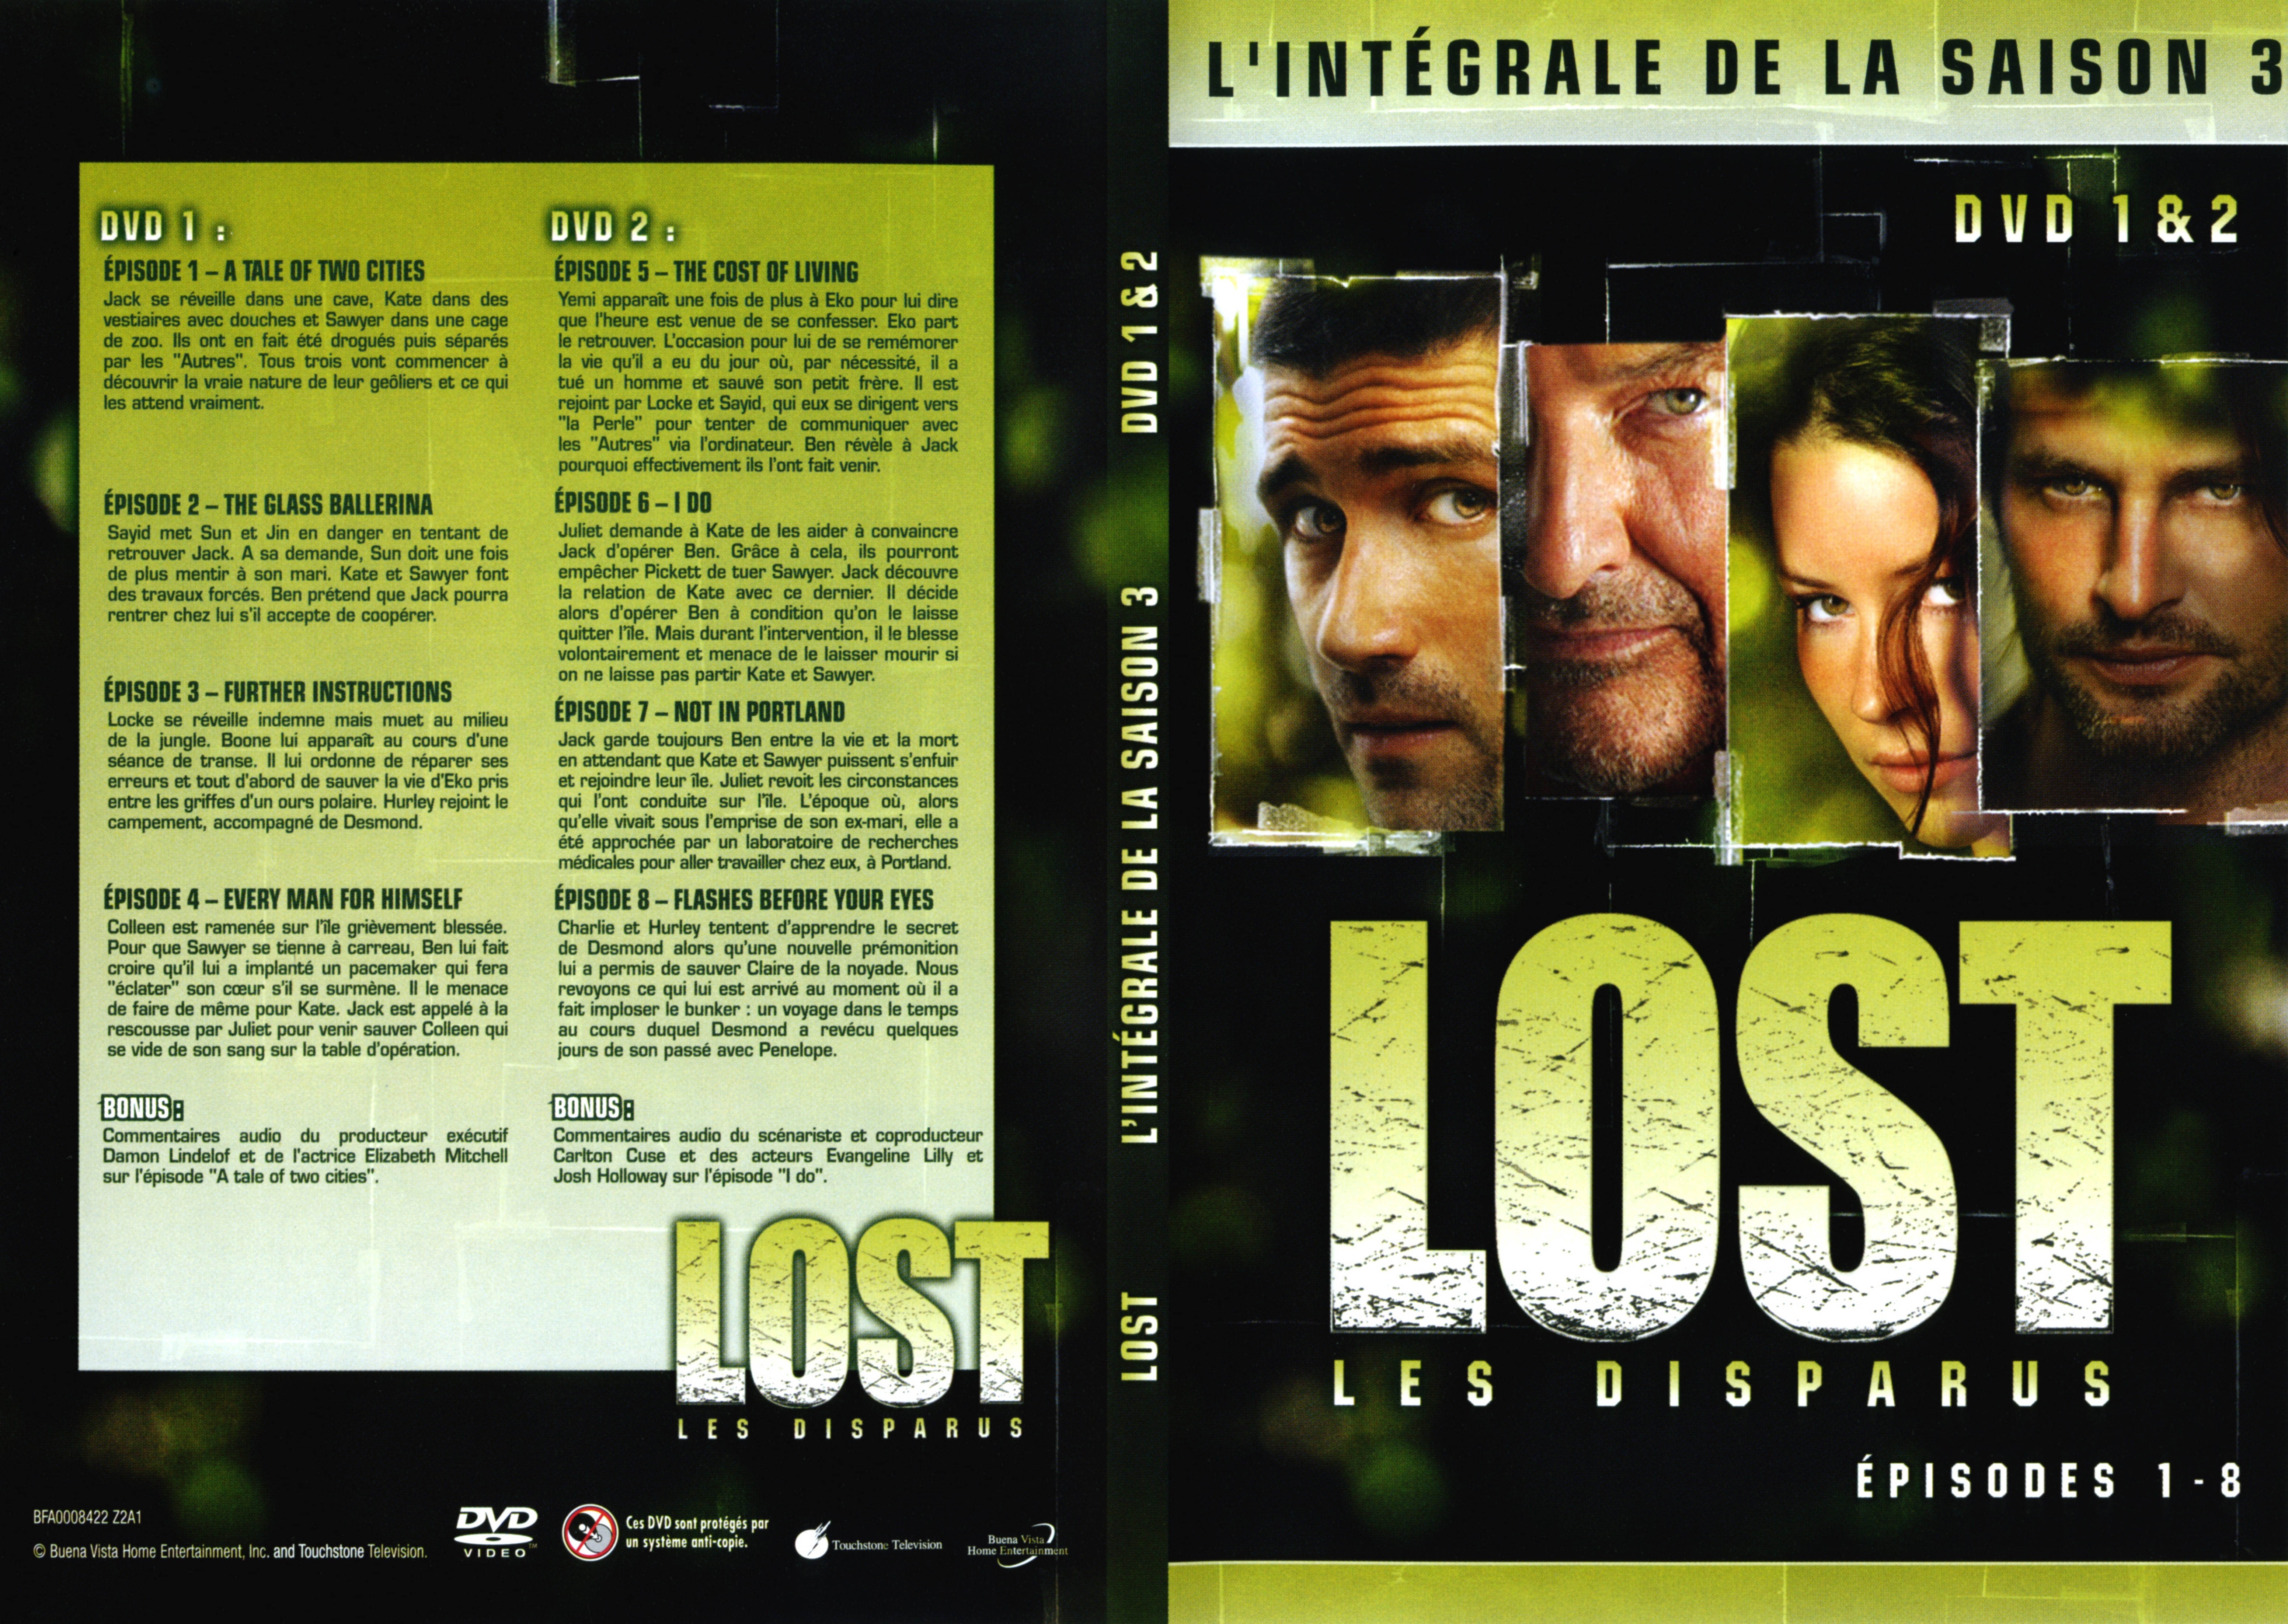 Jaquette DVD Lost Saison 3 DVD 1